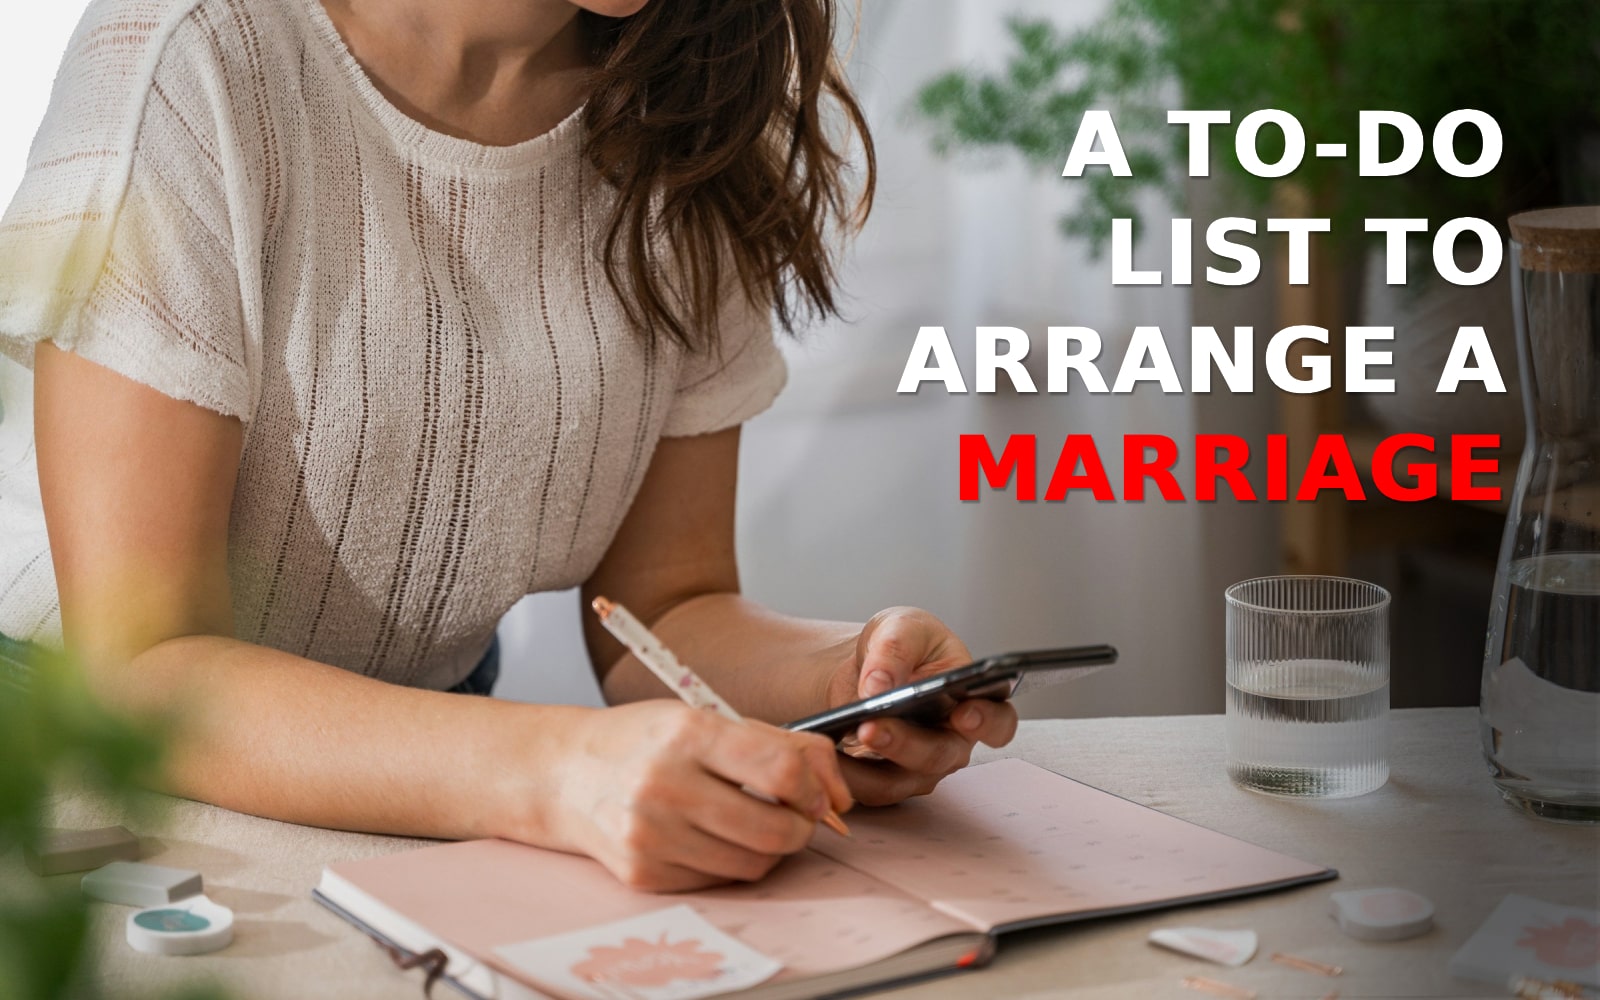 A To-do list to arrange a marriage